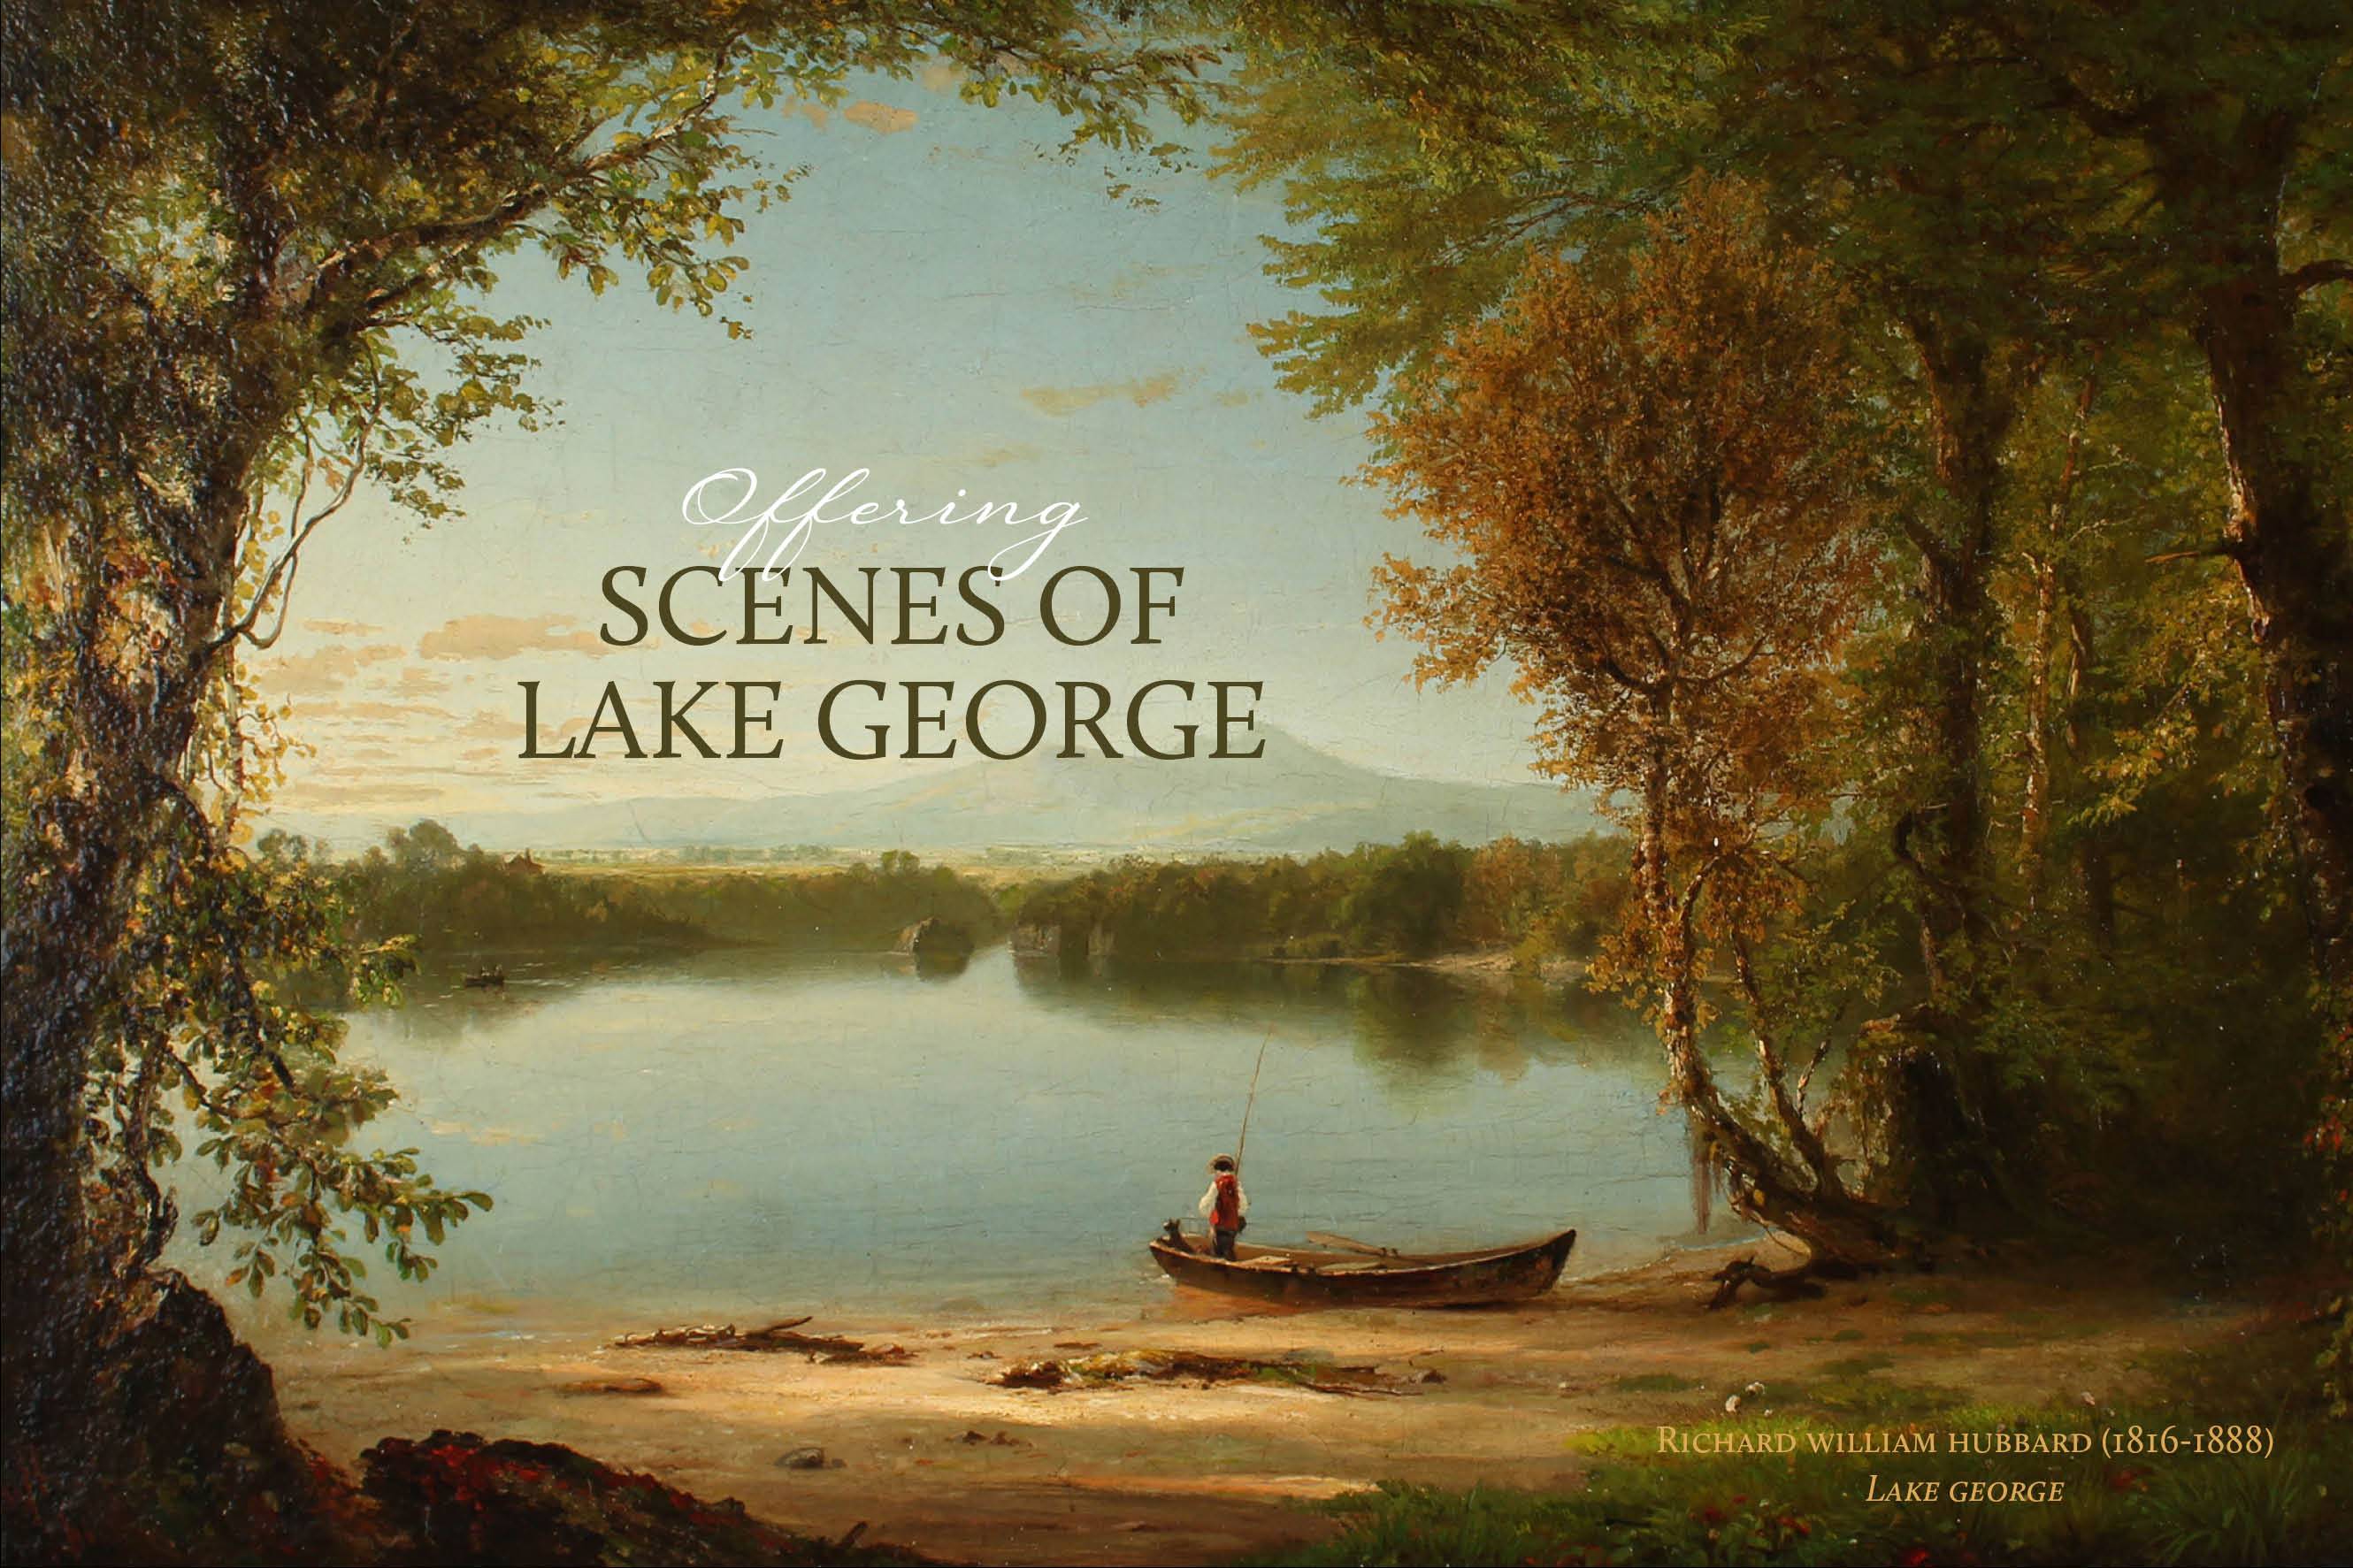 Offering Scenes of Lake George